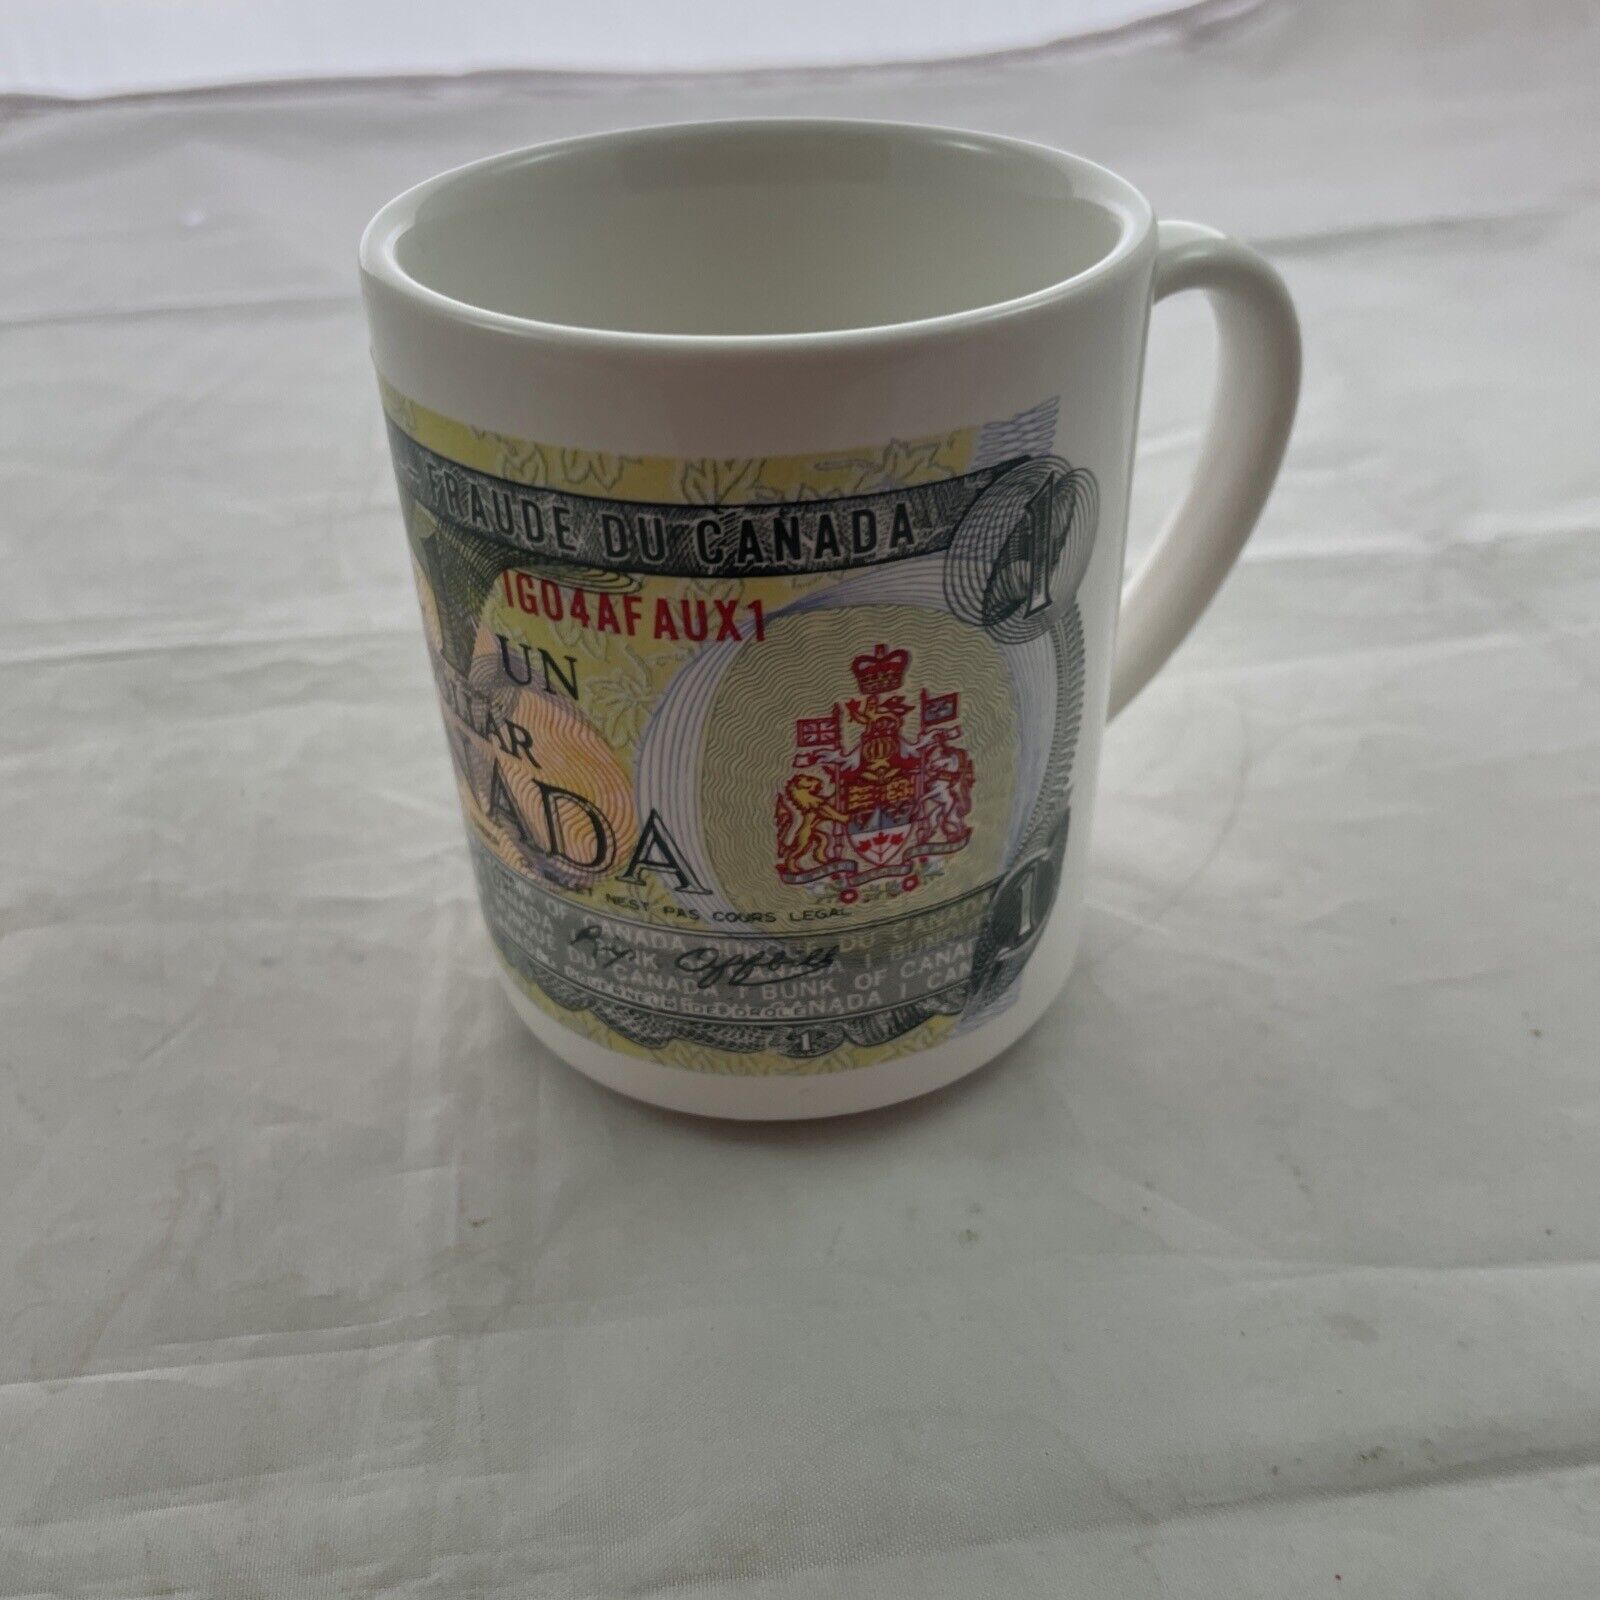 Canada 1973 One Dollar Bill Queen Elizabeth II Coffee Mug Canadian